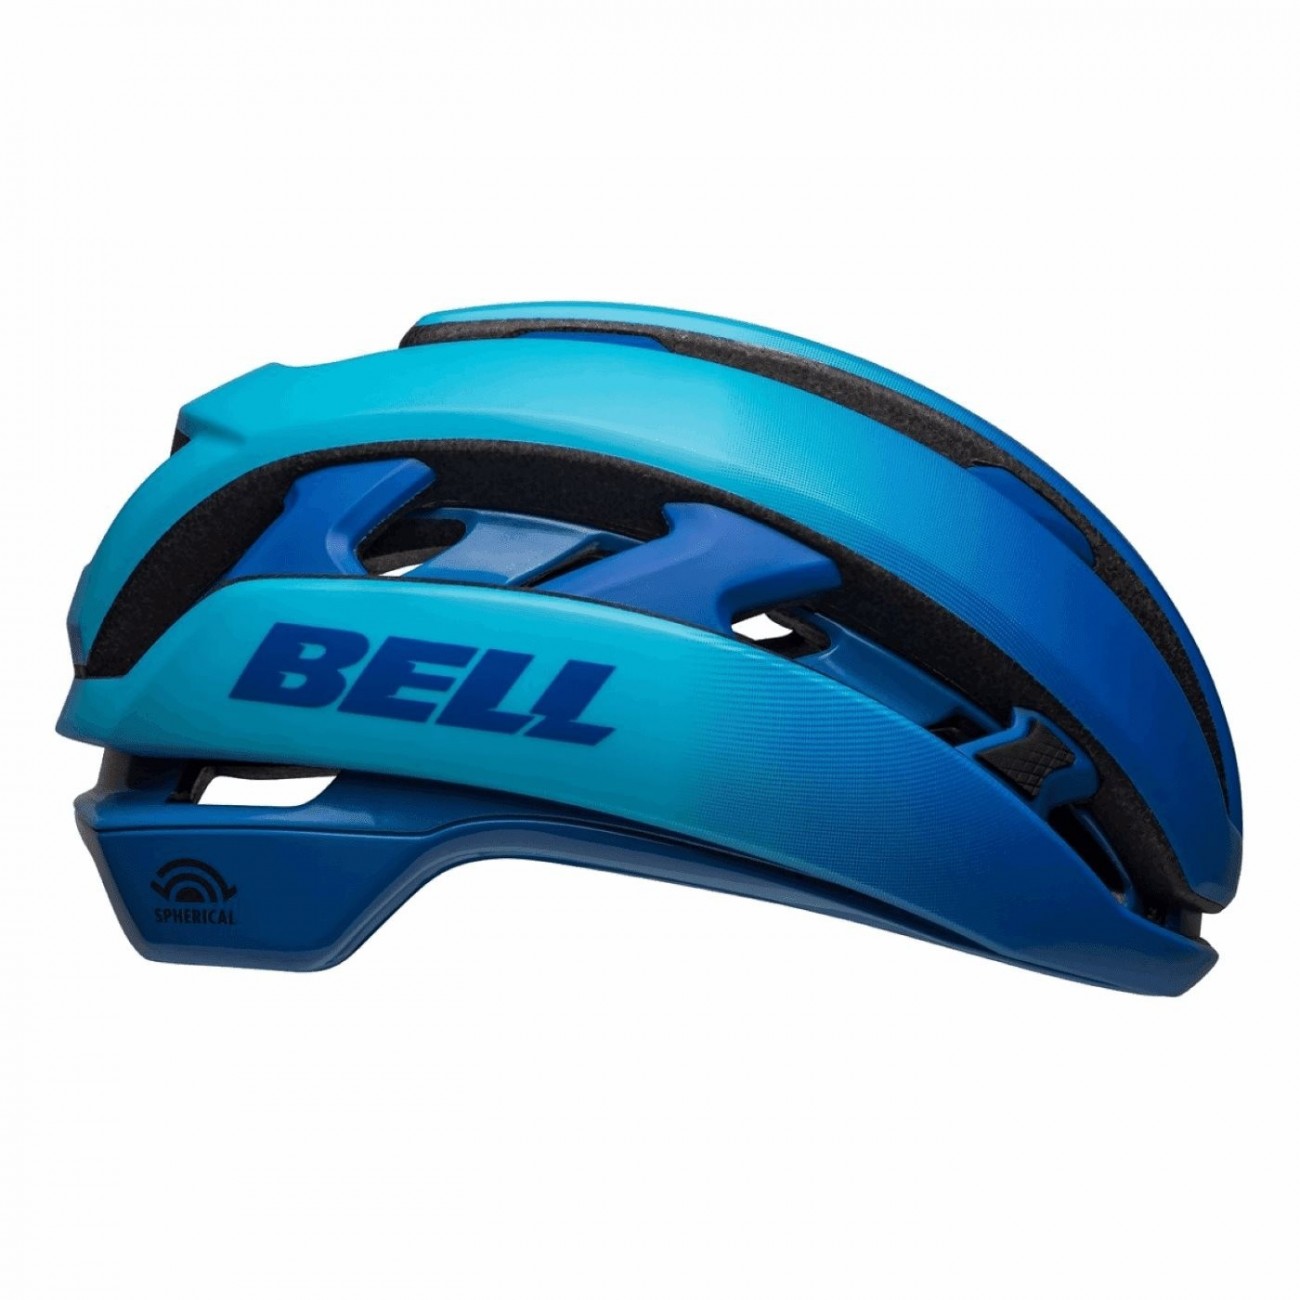 Helm xr sphärisches blau 55-59cm grösse m - 1